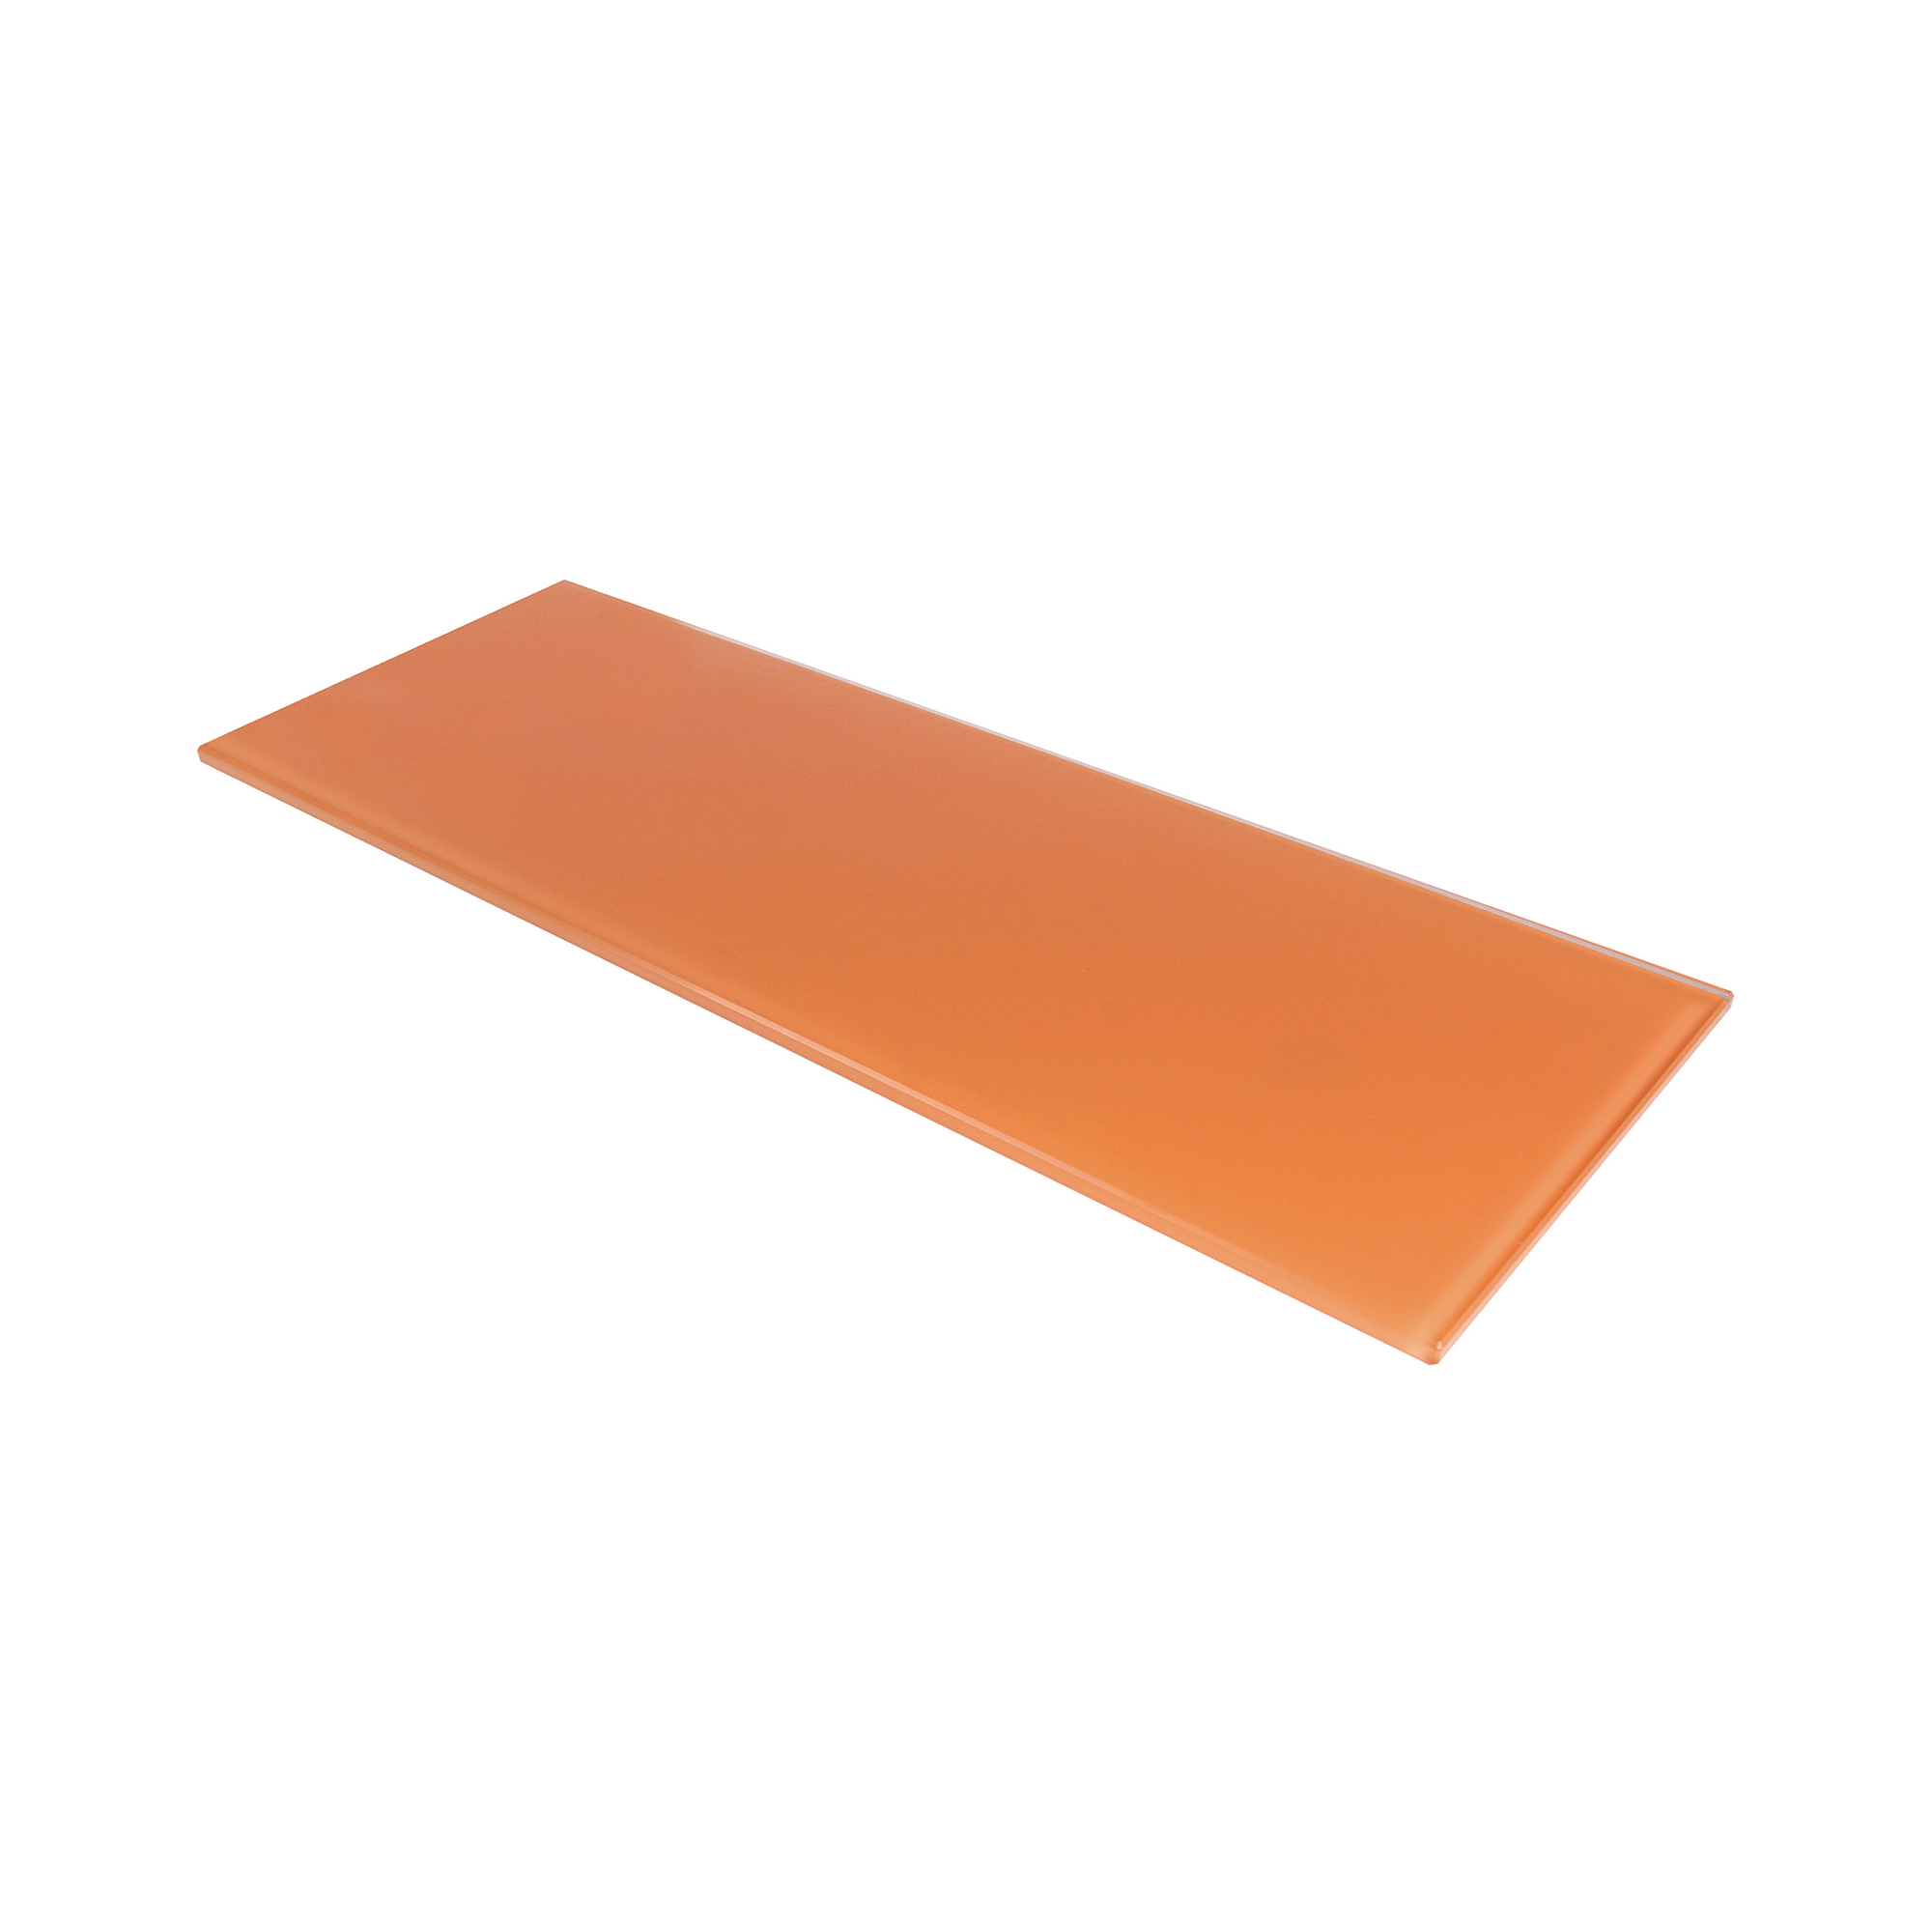 Estante de Cristal Rectangular Acabado en Naranja | Medidas 400*6*150 mm | Espesor de la Balda: 6 mm | 1 Unidad